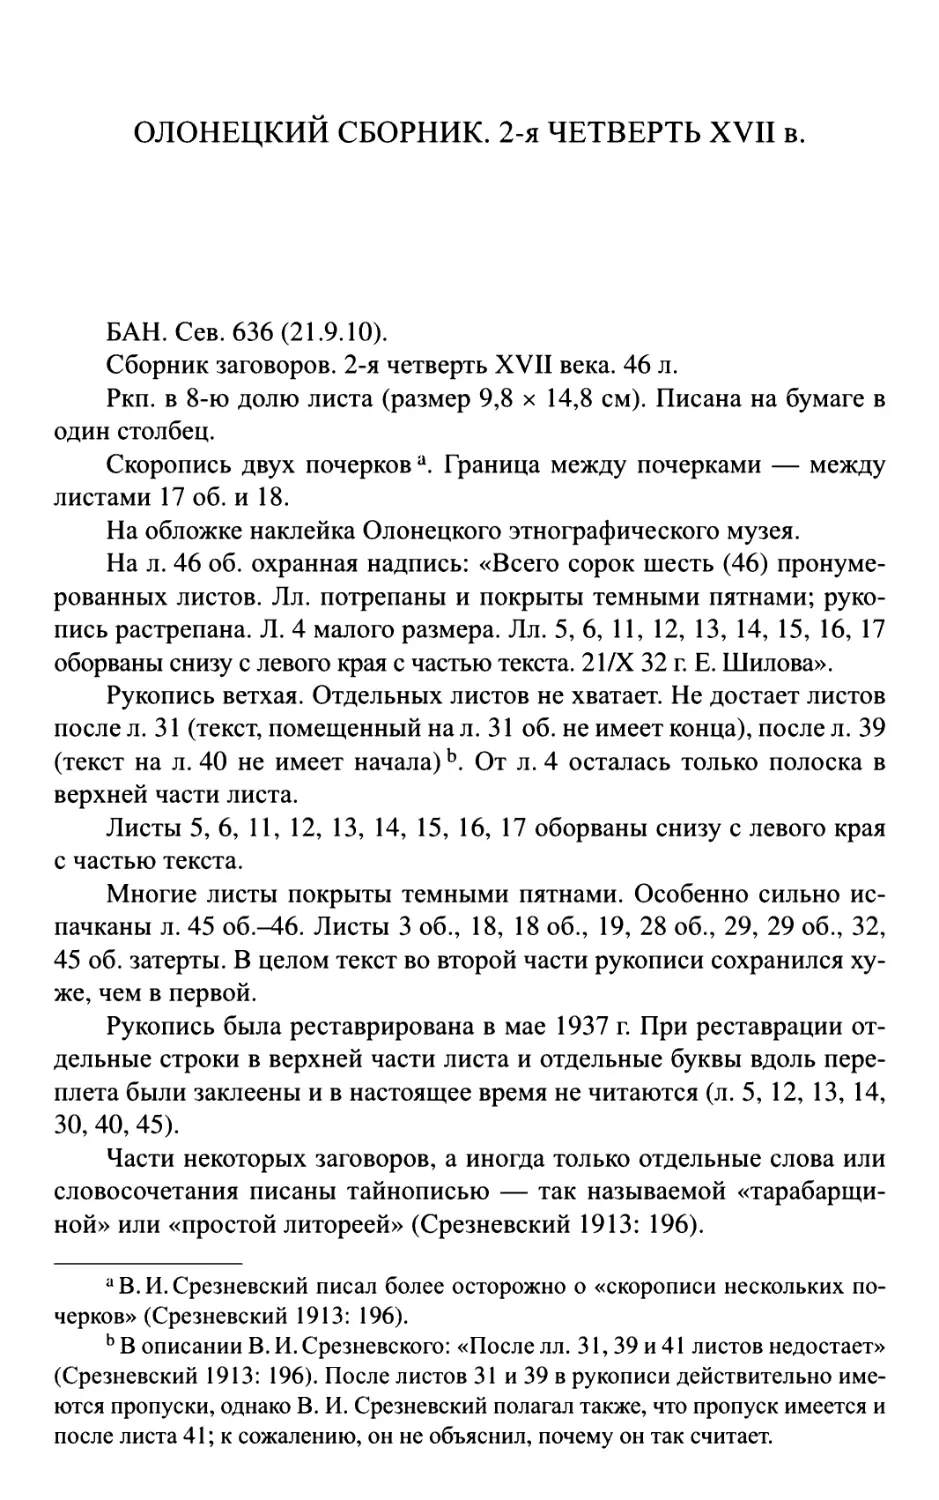 Олонецкий сборник. 2-я четверть XVII в.